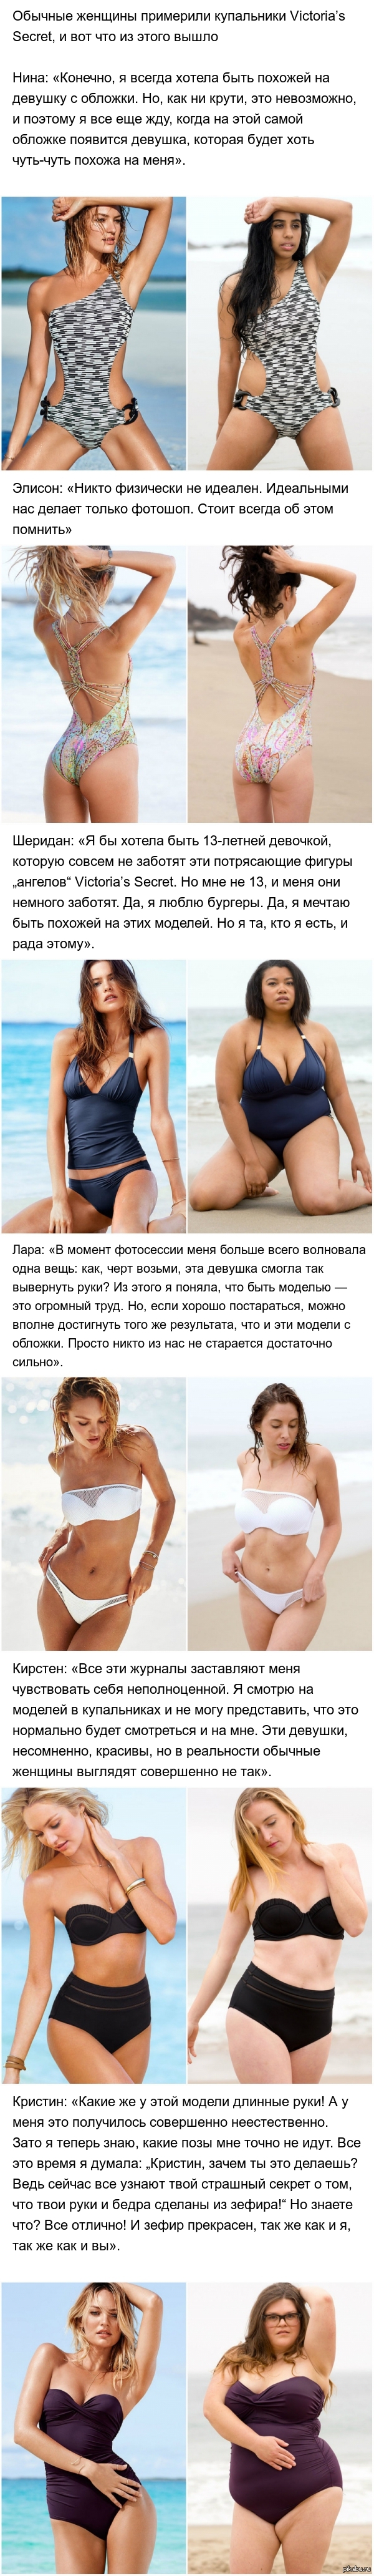     Victorias Secret,       : http://www.adme.ru/svoboda-kultura/obychnye-zhenschiny-primerili-kupalniki-victorias-secret-i-vot-chto-iz-etogo-vyshlo-962510/  AdMe.ru